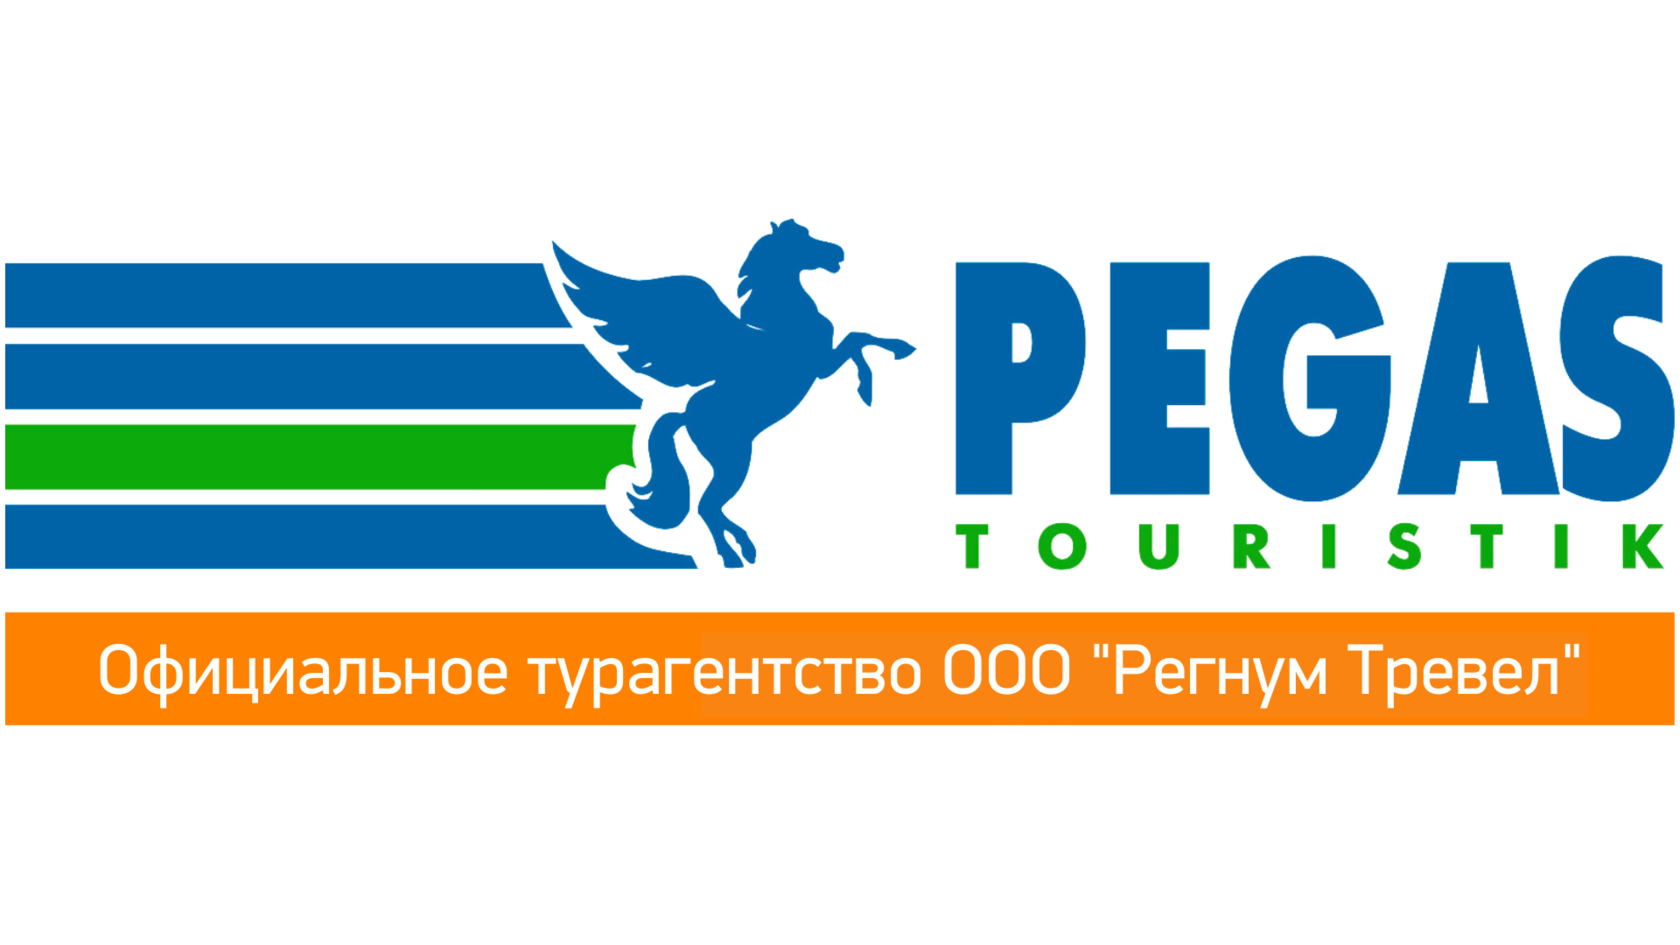 Пегас рекламные туры. Пегас туроператор. Pegas Touristik логотип. Визитка Пегас Туристик. Туркомпания Пегас.